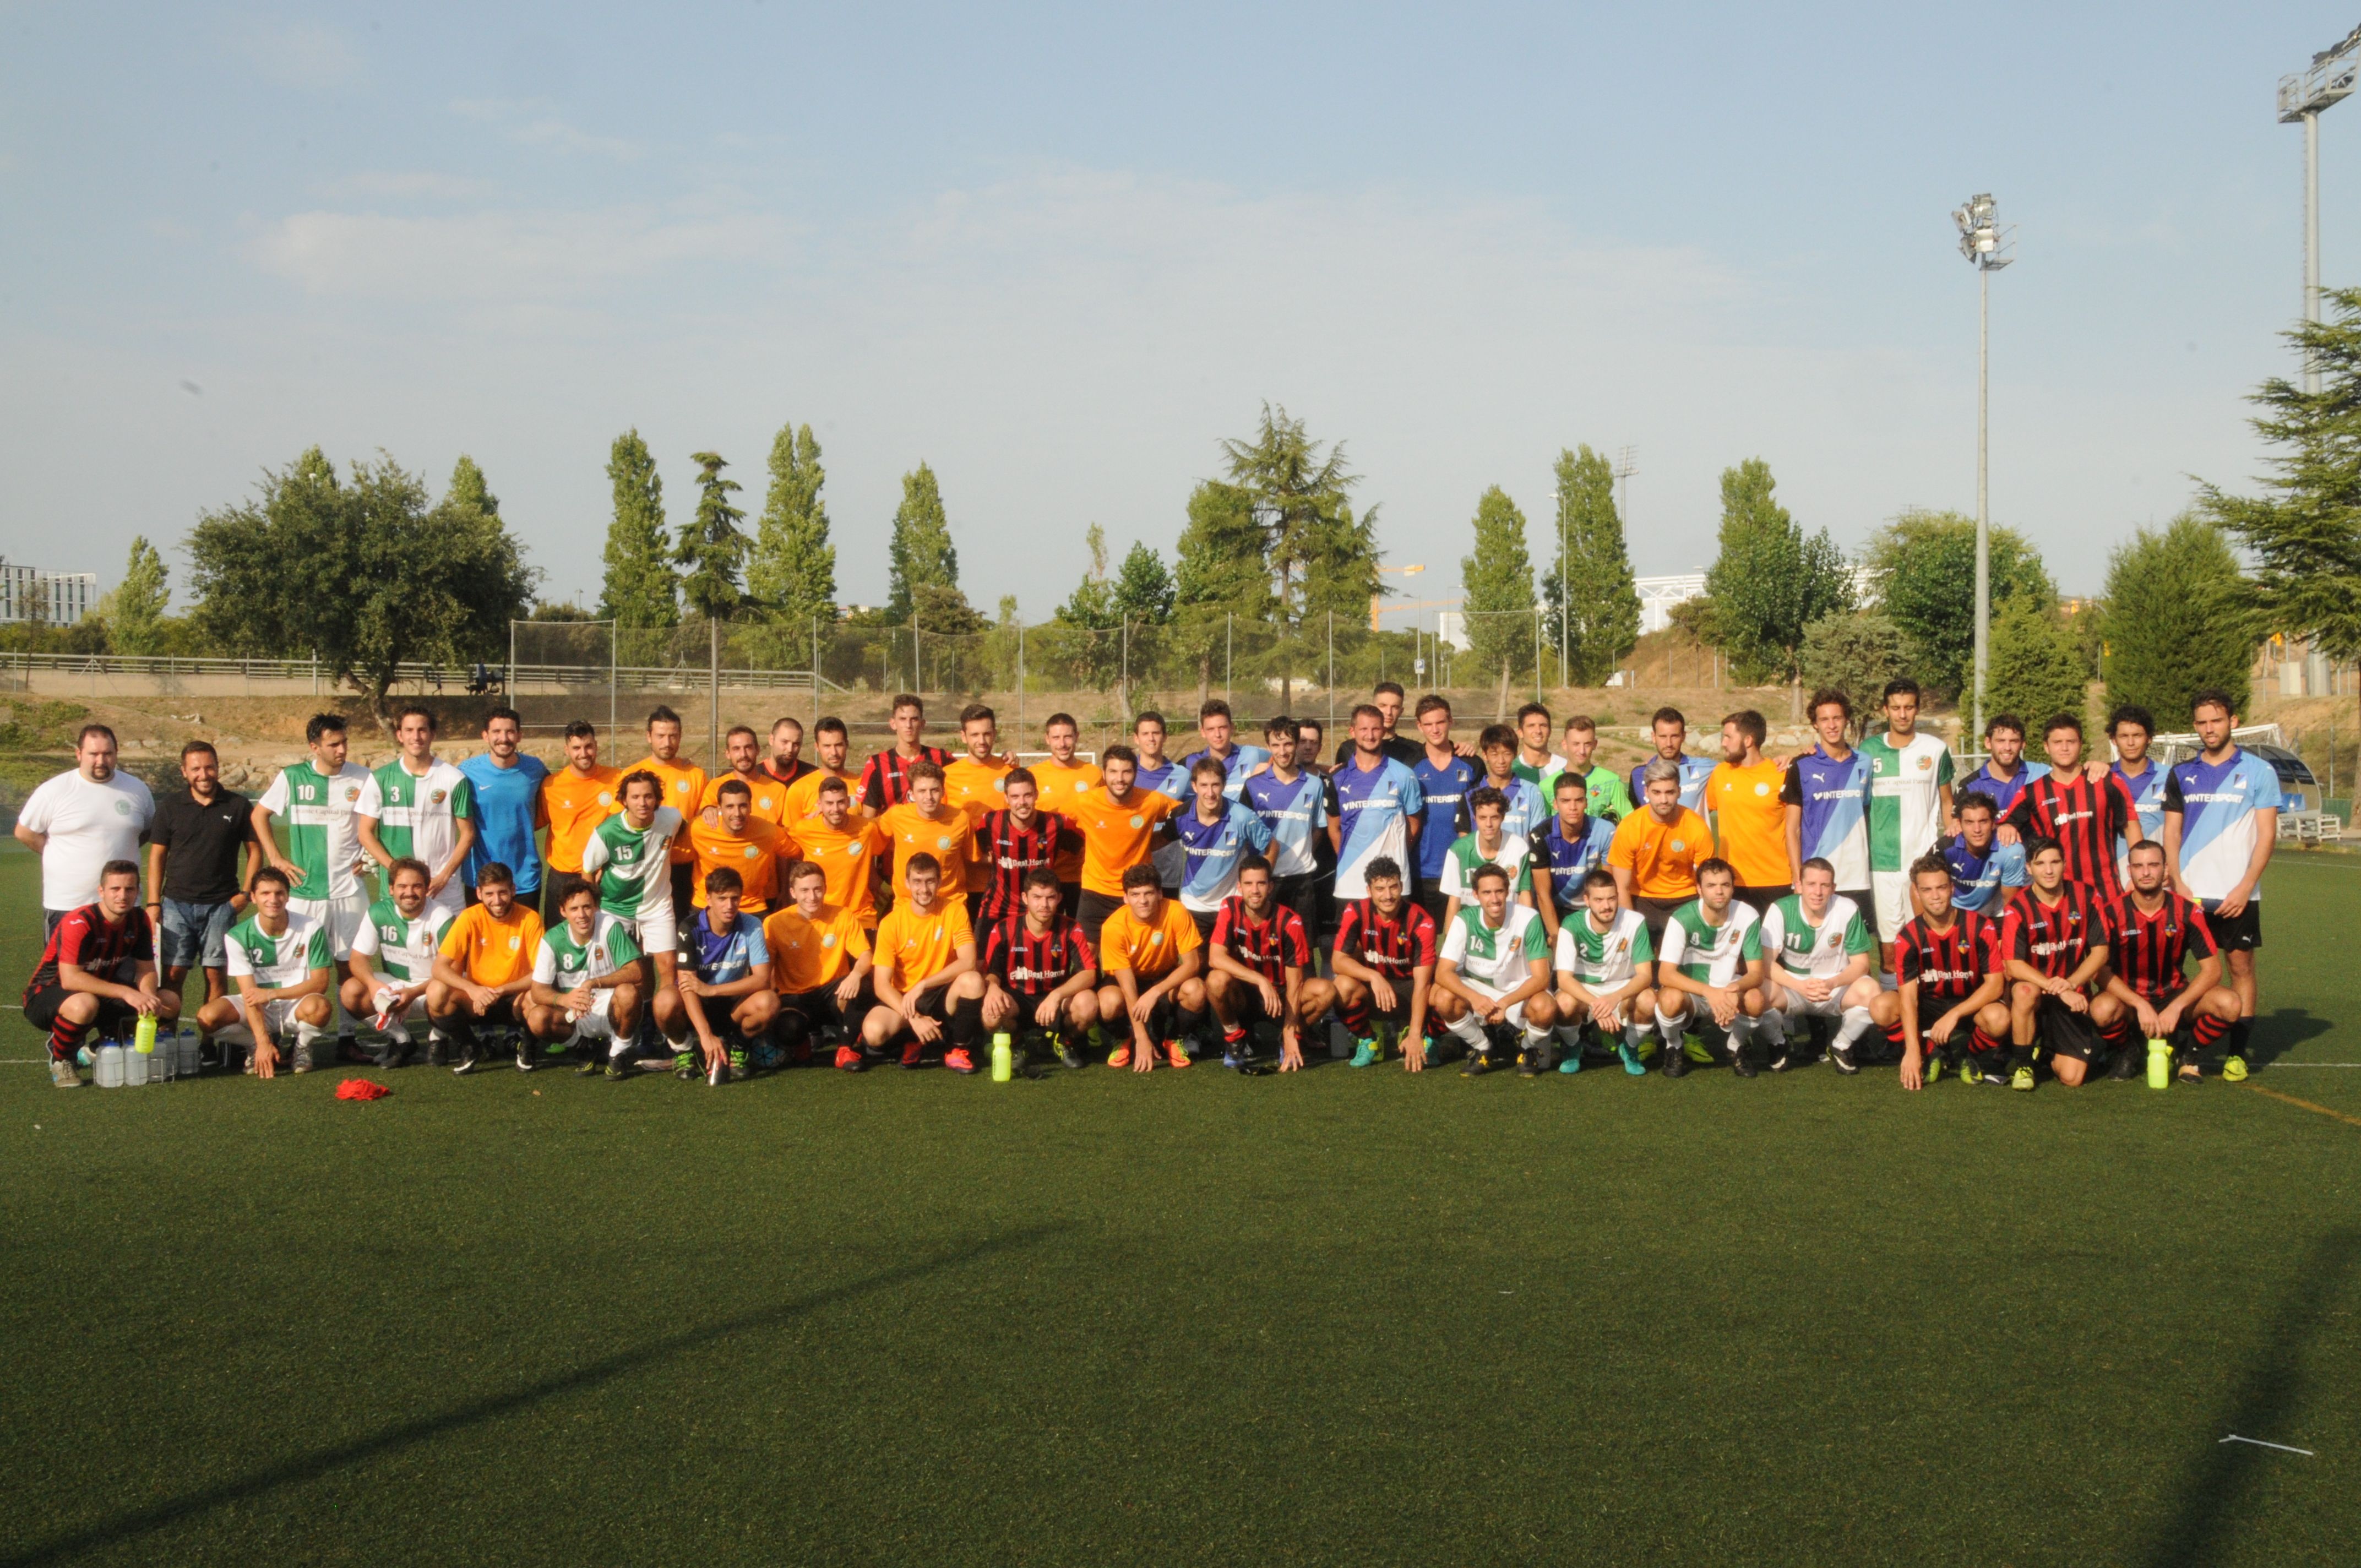 El Valldoreix FC A, el CFU Mira-sol Baco, el Junior FC B i el Sant Cugat FC B, els equips participants del torneig. FOTO: Albert Riera Velasco